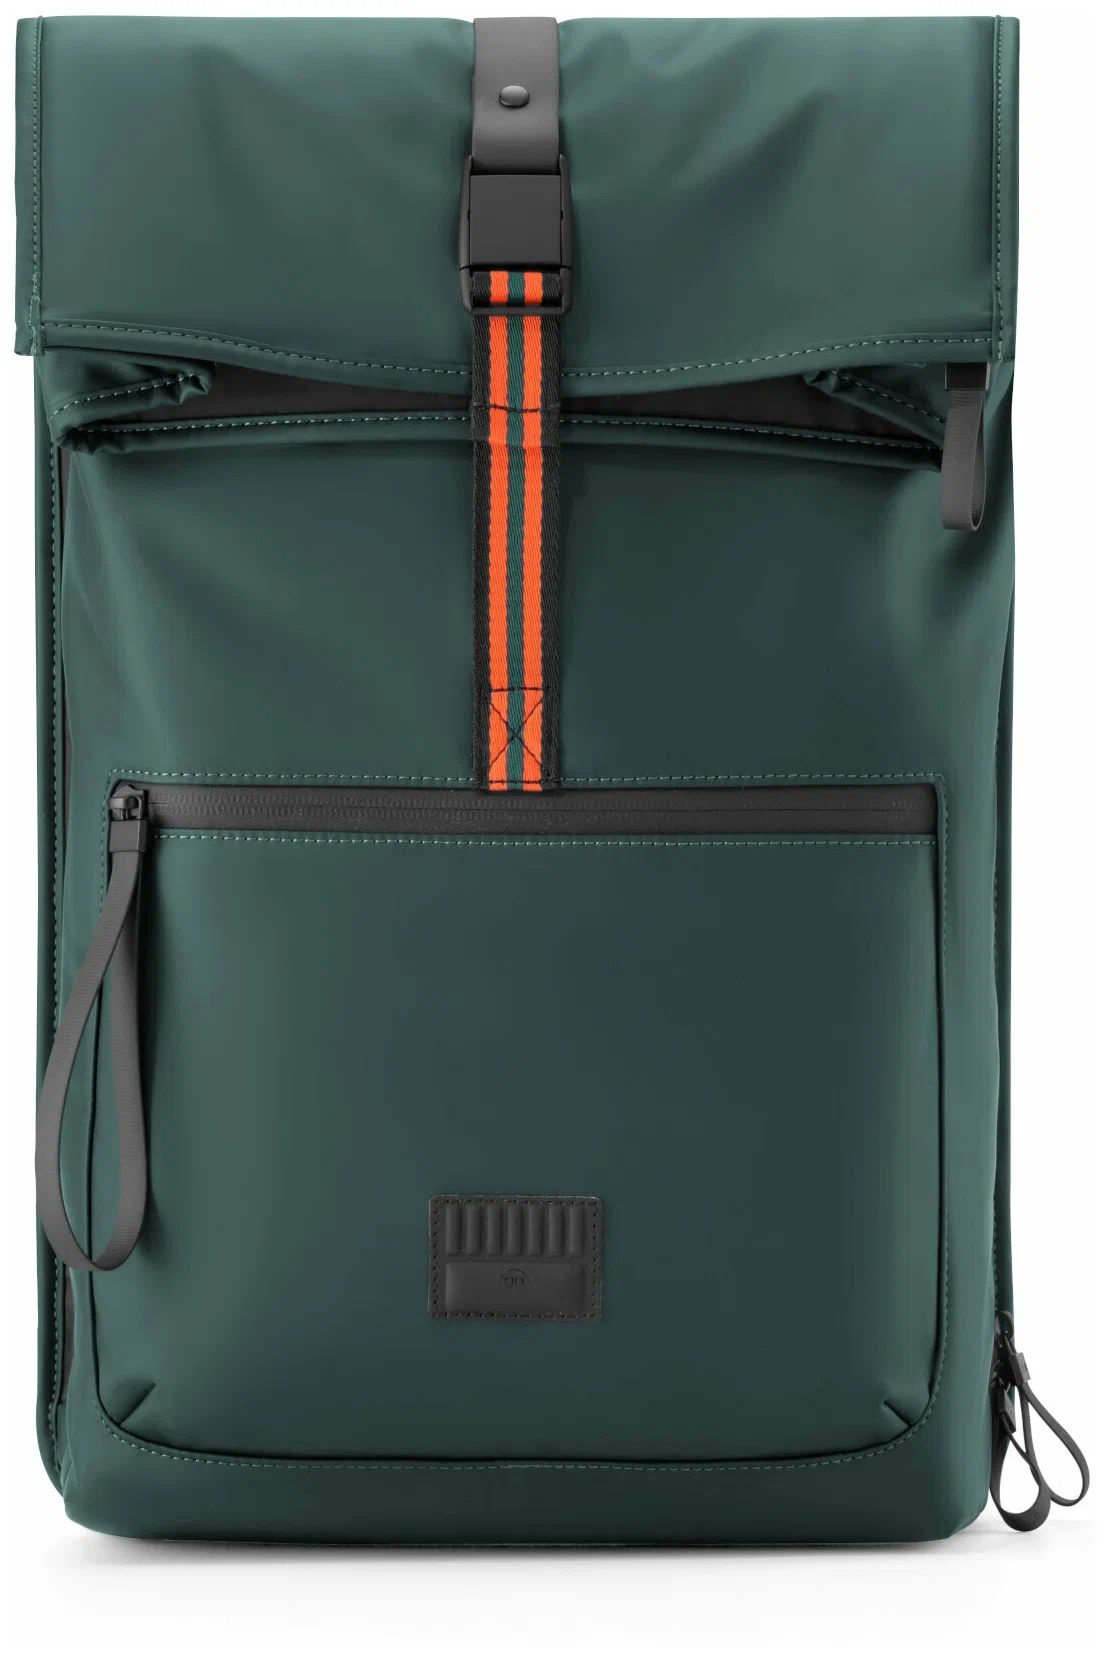 Рюкзак NINETYGO Urban daily plus backpack зеленый 